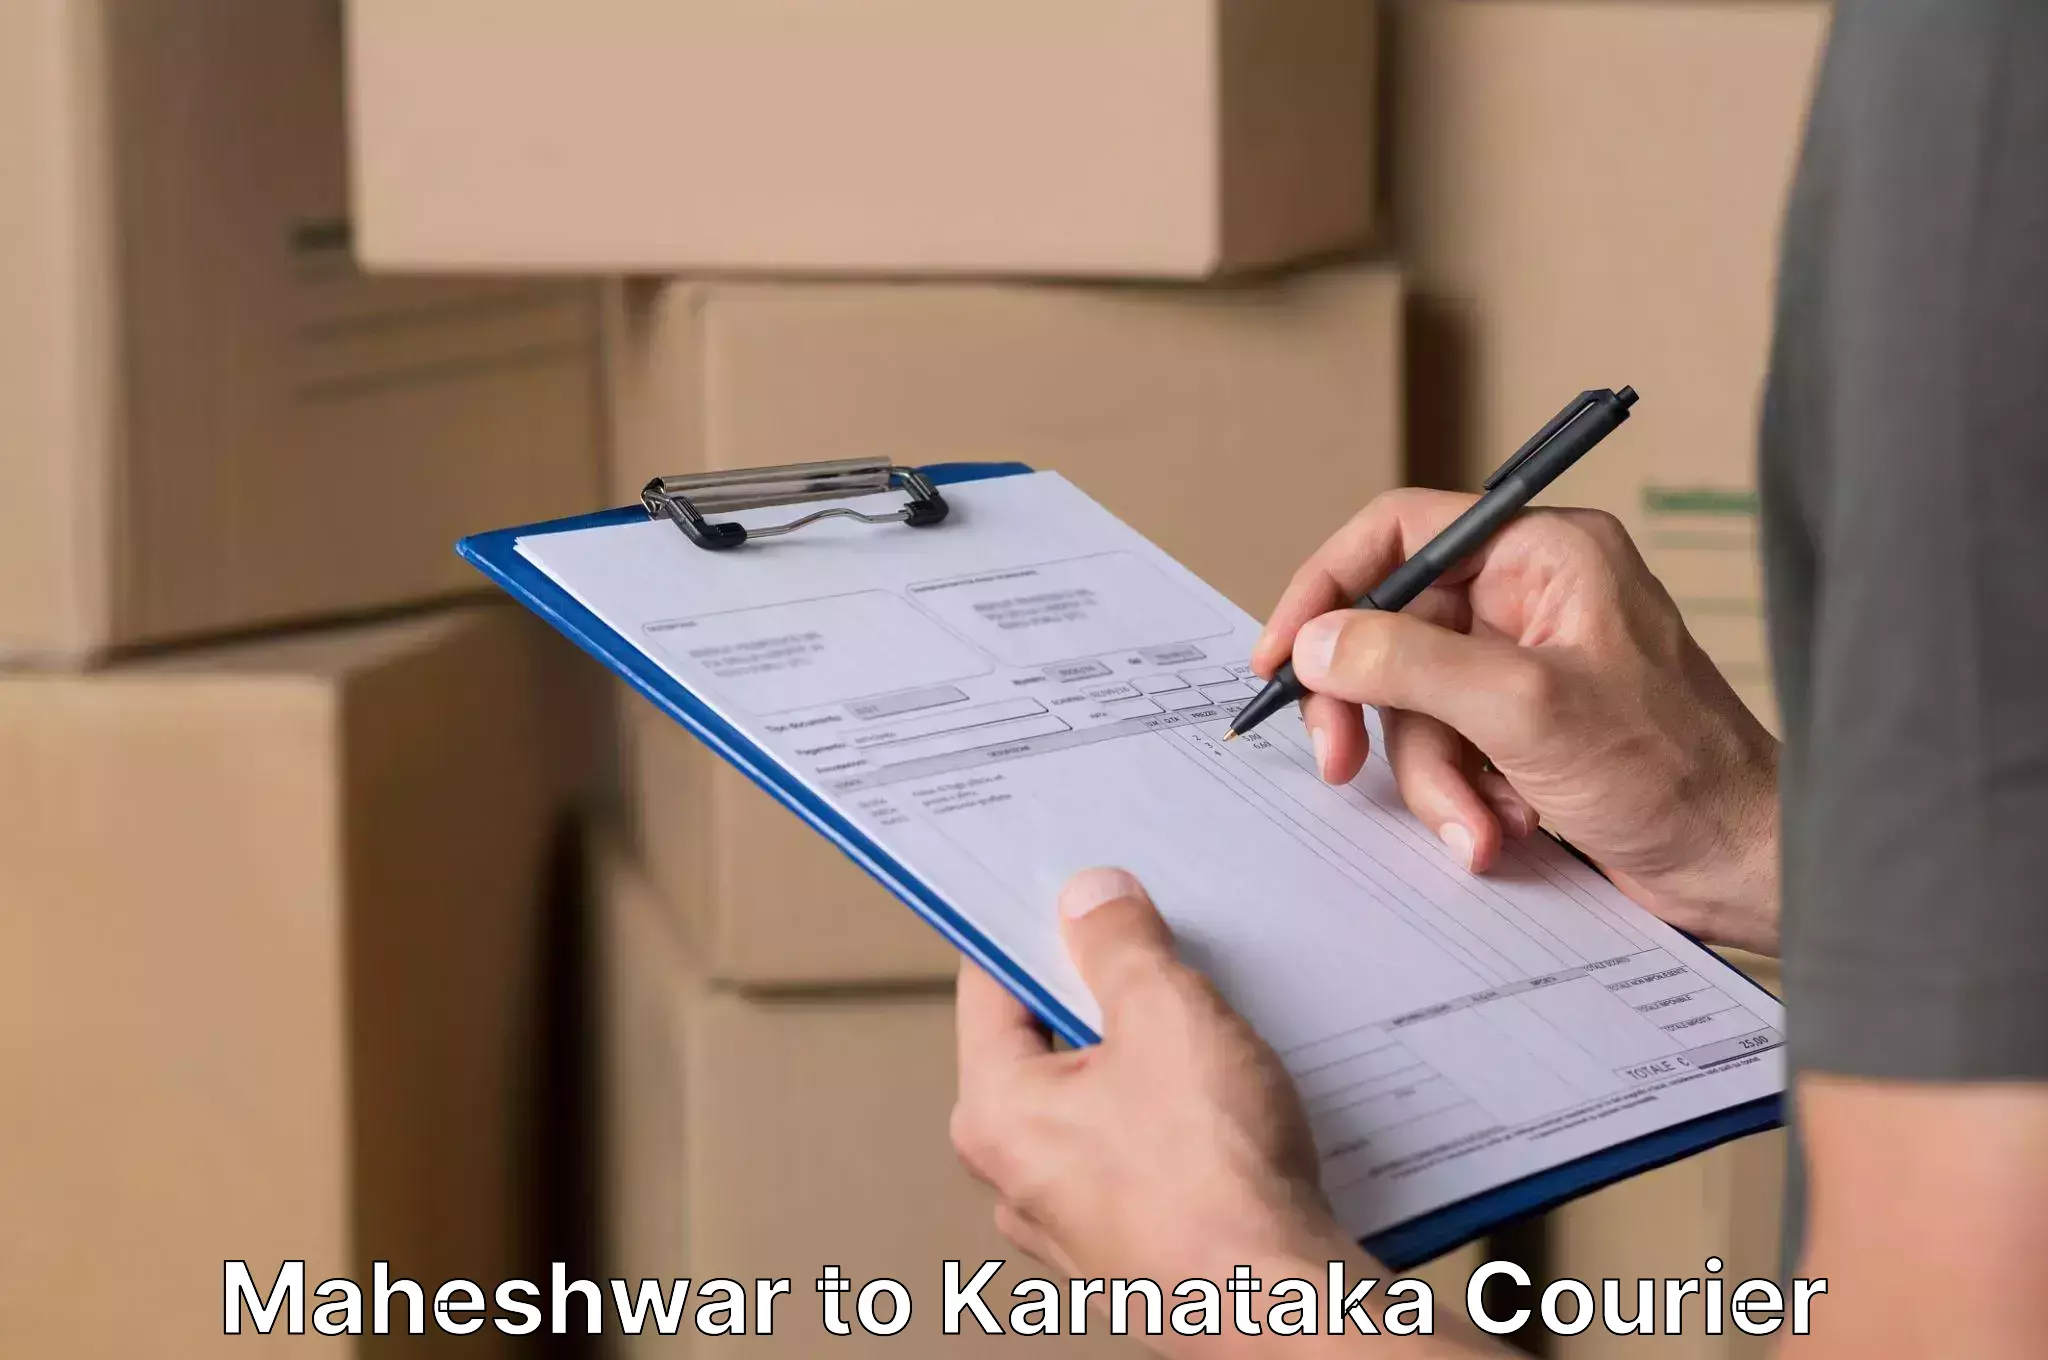 Efficient relocation services Maheshwar to Kanjarakatte